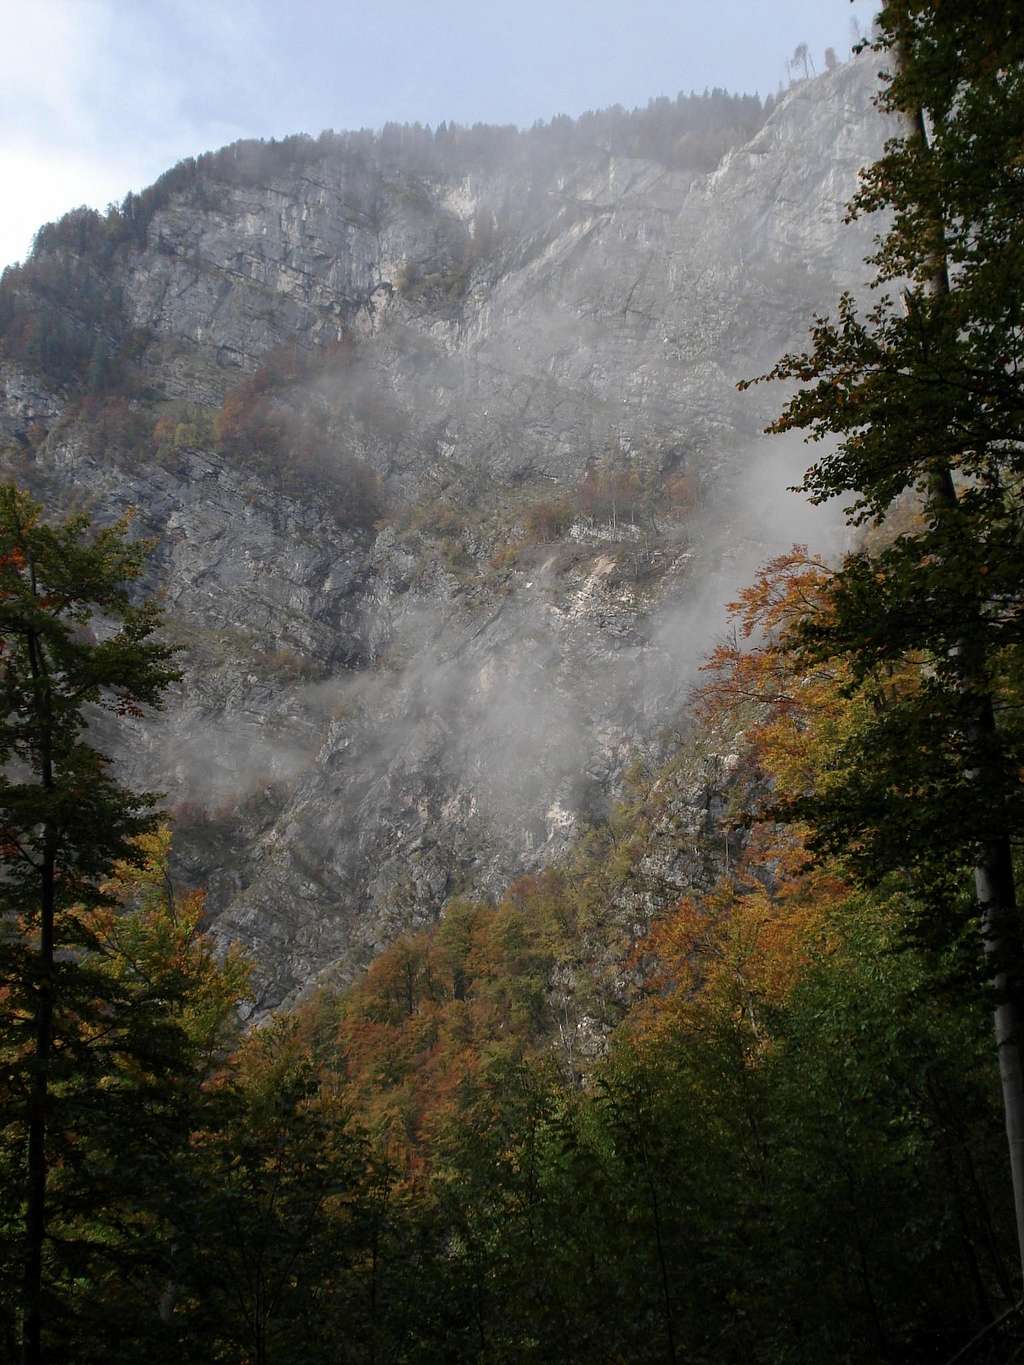 Triglav 7-Lakes Valley - Komarca Face from Savica Hut